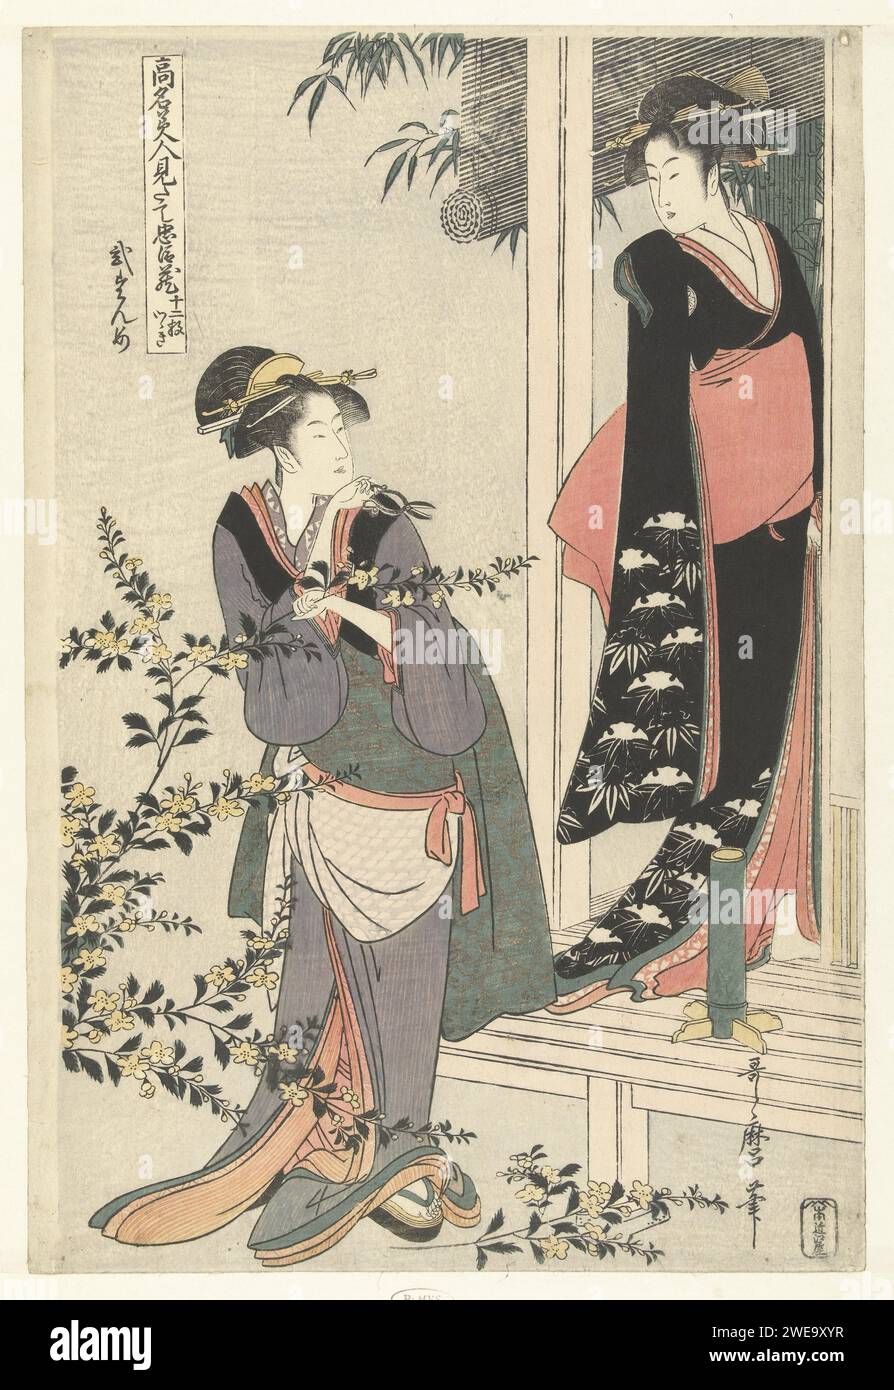 Deux femmes dans un buisson de Yamabuki en fleurs : le second acte., Kitagawa Utamaro, 1795 - 1800 estampe femme habillée comme une maison de thé servie, debout avec des ciseaux à la main au buisson de Yamabuki en fleurs, regardant en arrière une femme en kimono noir et OBI rouge, debout sur la véranda, à côté d'un vase de fleurs; bambou en arrière-plan. Femme adulte de couleur de papier de bois de couleur japonaise. plantes ; végétation (+ fleurs, floraison, floraison). outils, aides, outils  artisanat et industries : ciseaux Banque D'Images